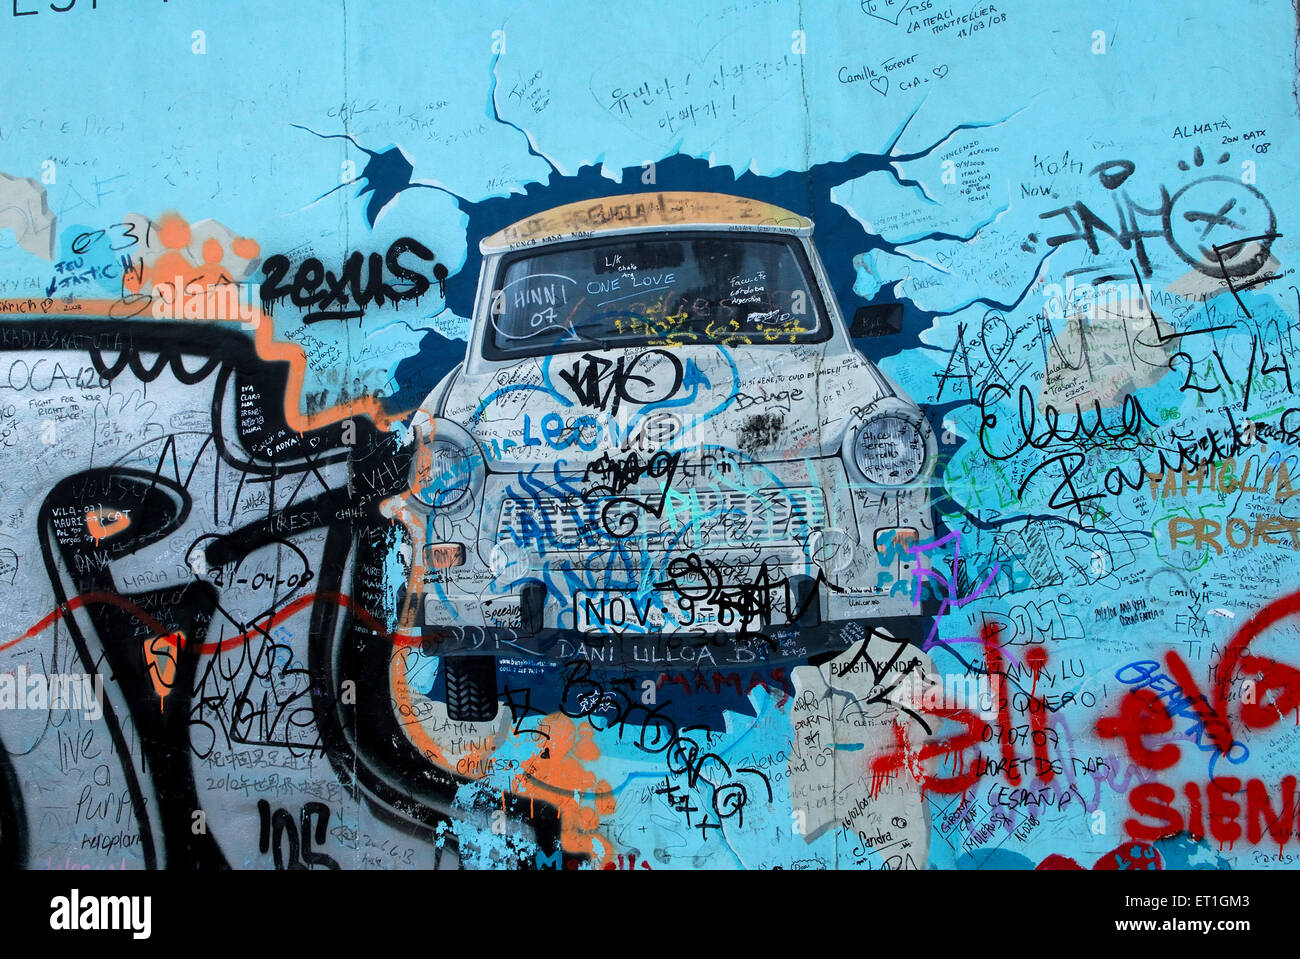 Mur graffiti voiture zexus elena, Berlin, Allemagne, allemand, Europe, Européen Banque D'Images